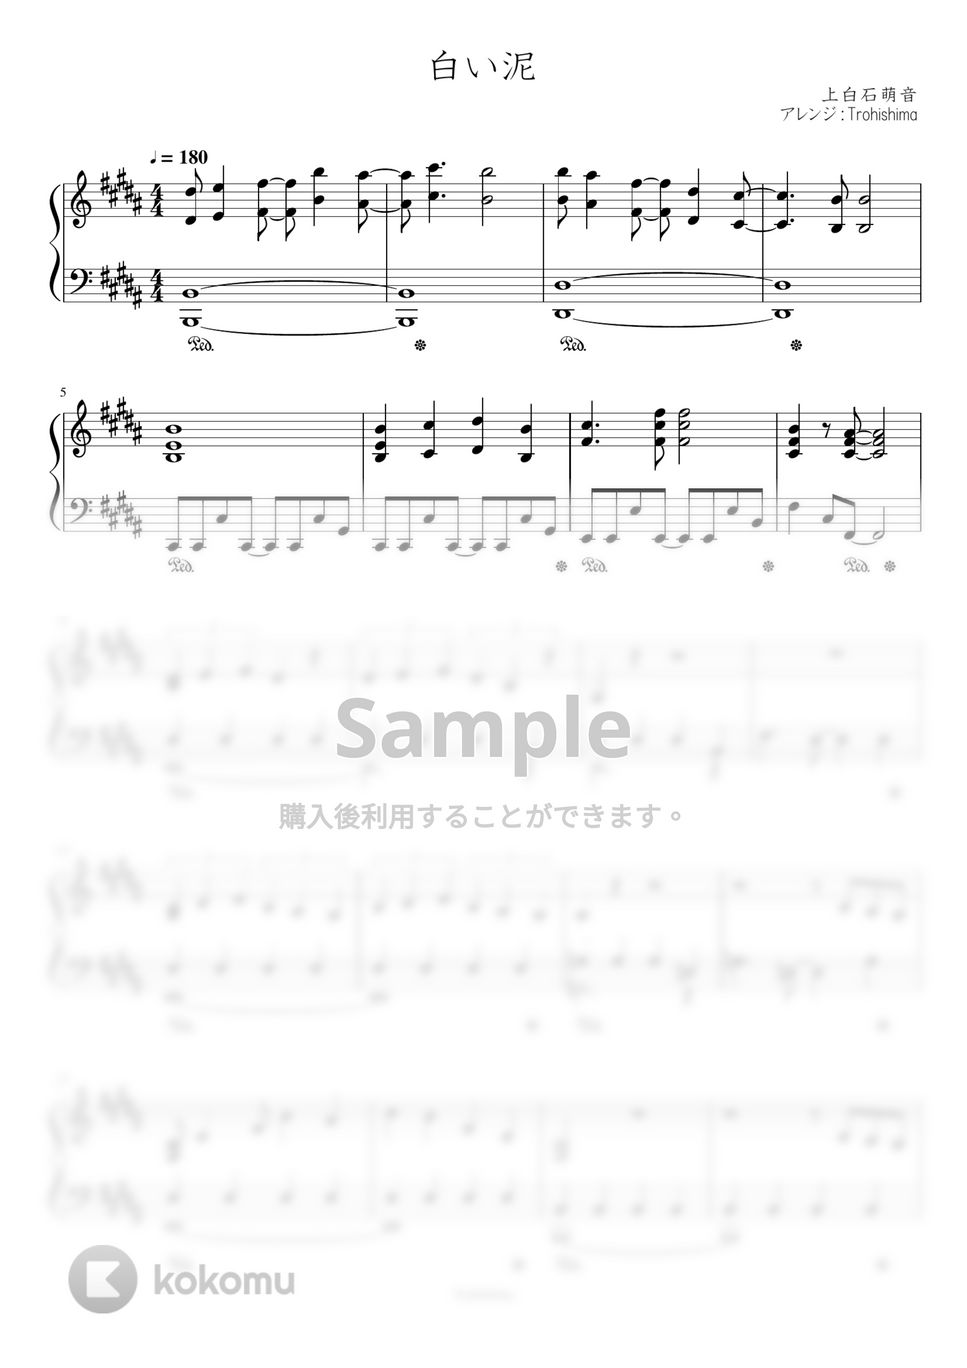 上白石萌音 - 白い泥 (メジャーセカンド第2シリーズOPテーマ) by Trohishima